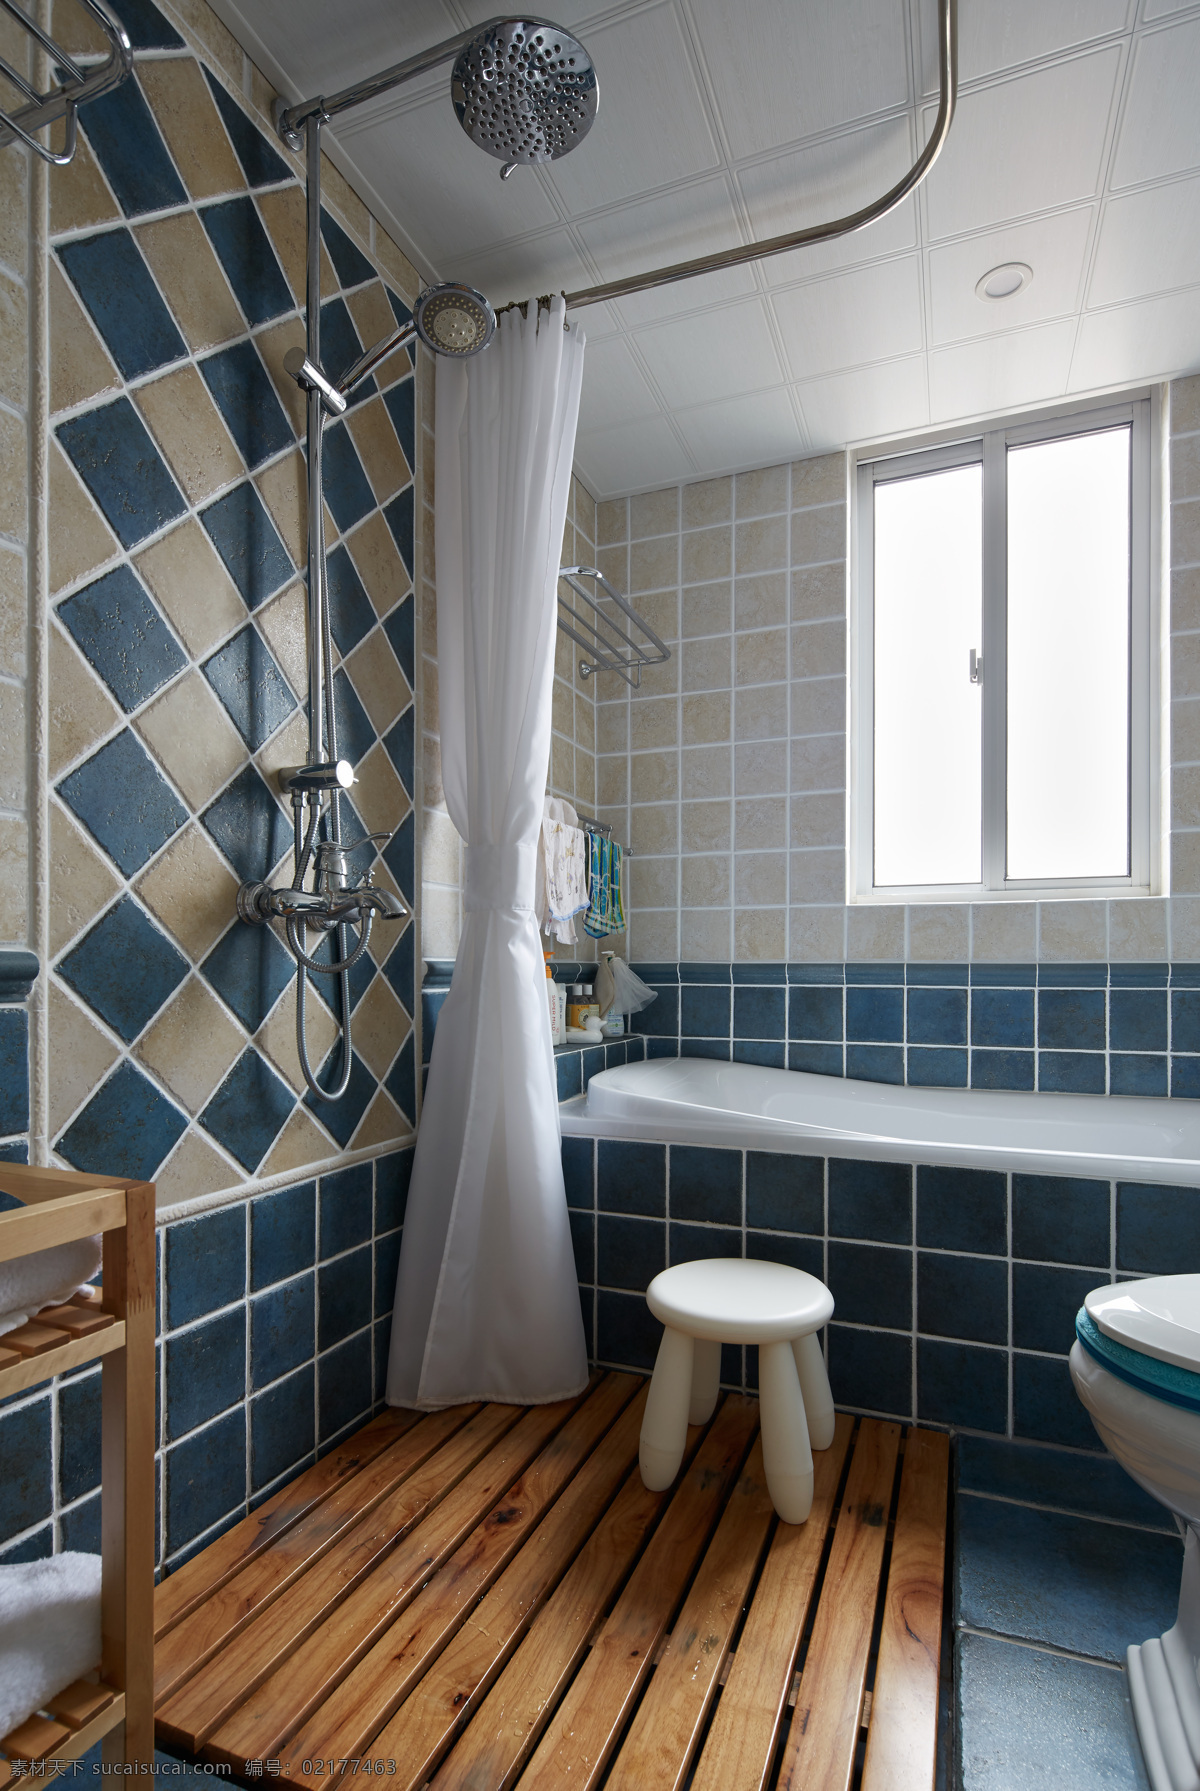 现代 地中海 风格 浴室 浴缸 墙砖 效果图 蓝色 装修 高清大图 室内设计